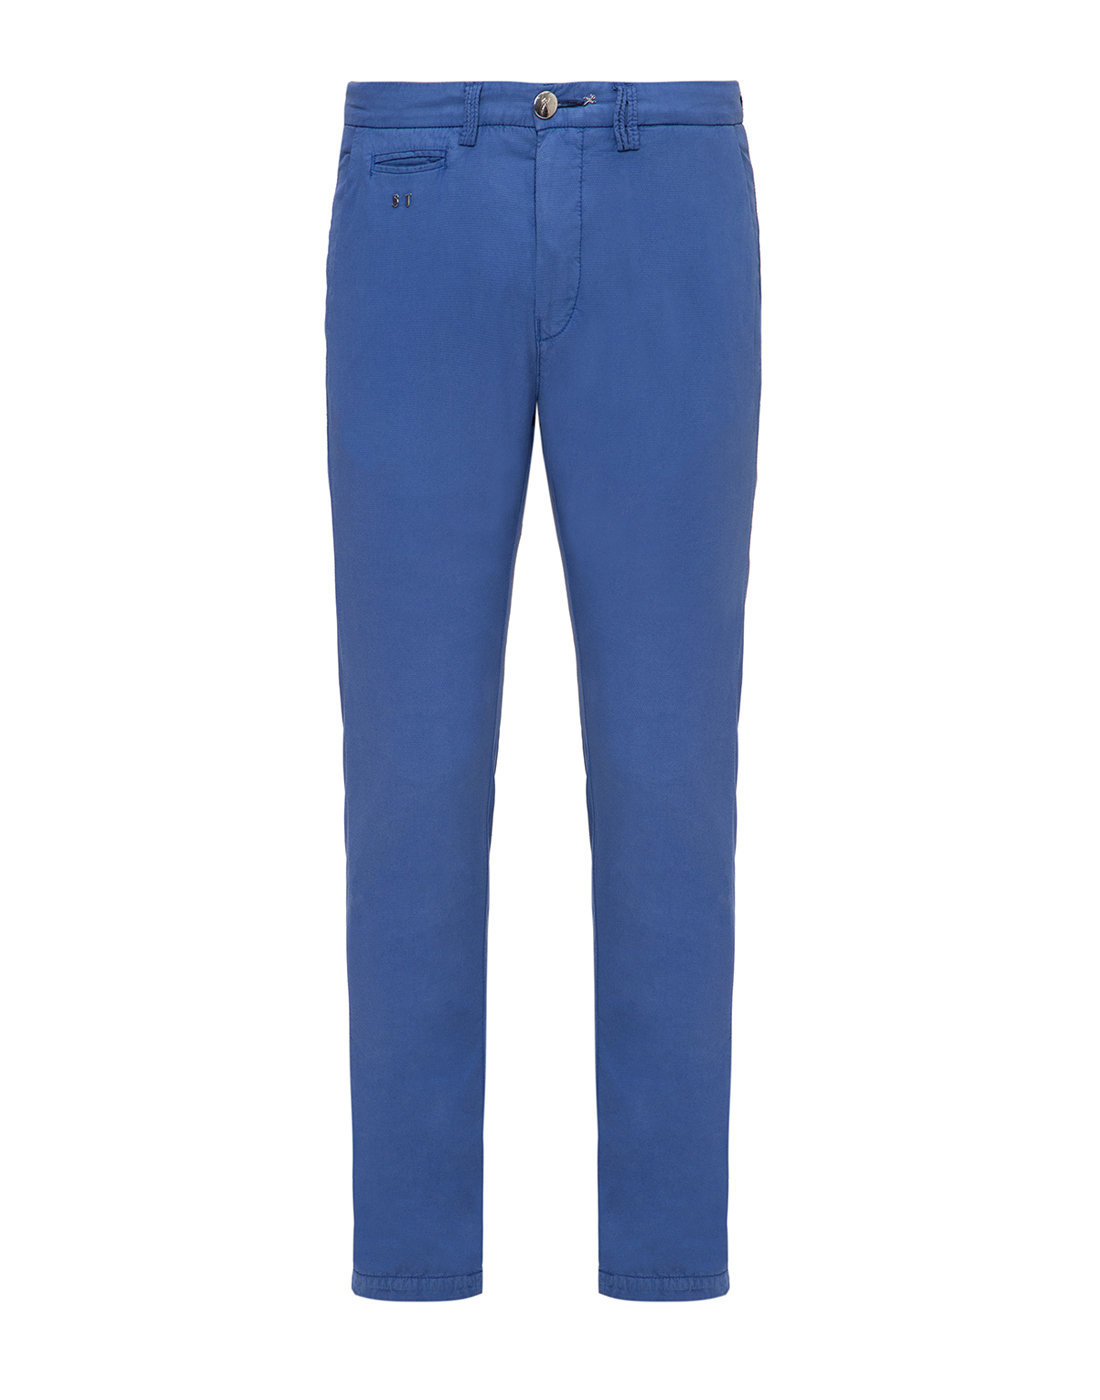 Мужские синие брюки Tramarossa SO170/M00/0499-1